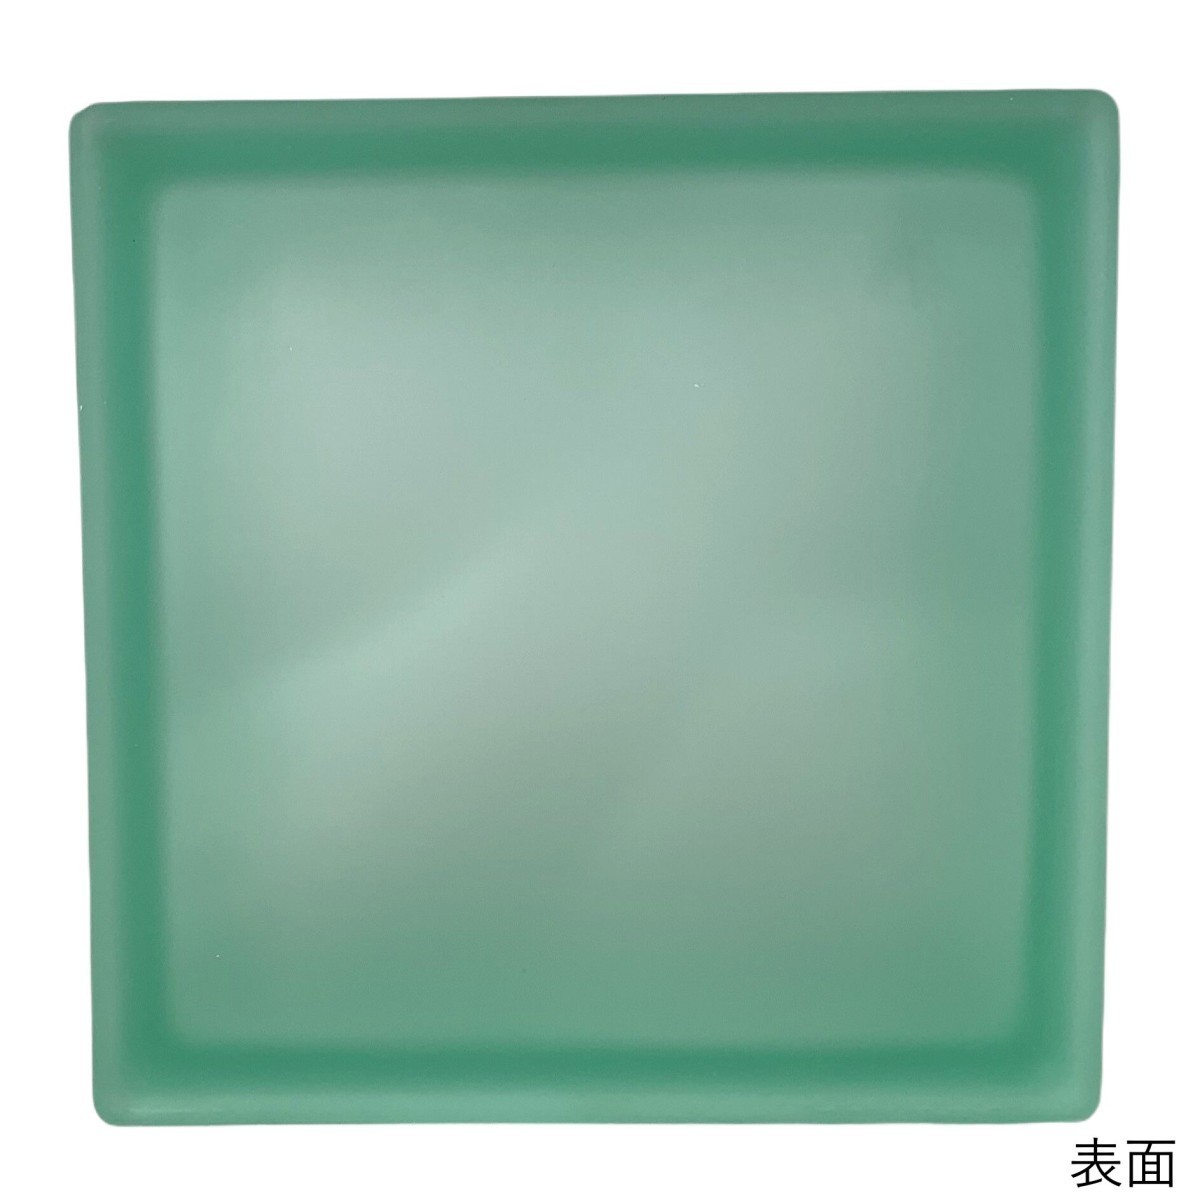 6個セット 送料無料 ガラスブロック 世界で有名なブランド品 厚み80mm宝石緑色ミスティ雲gb4880-6p_画像3